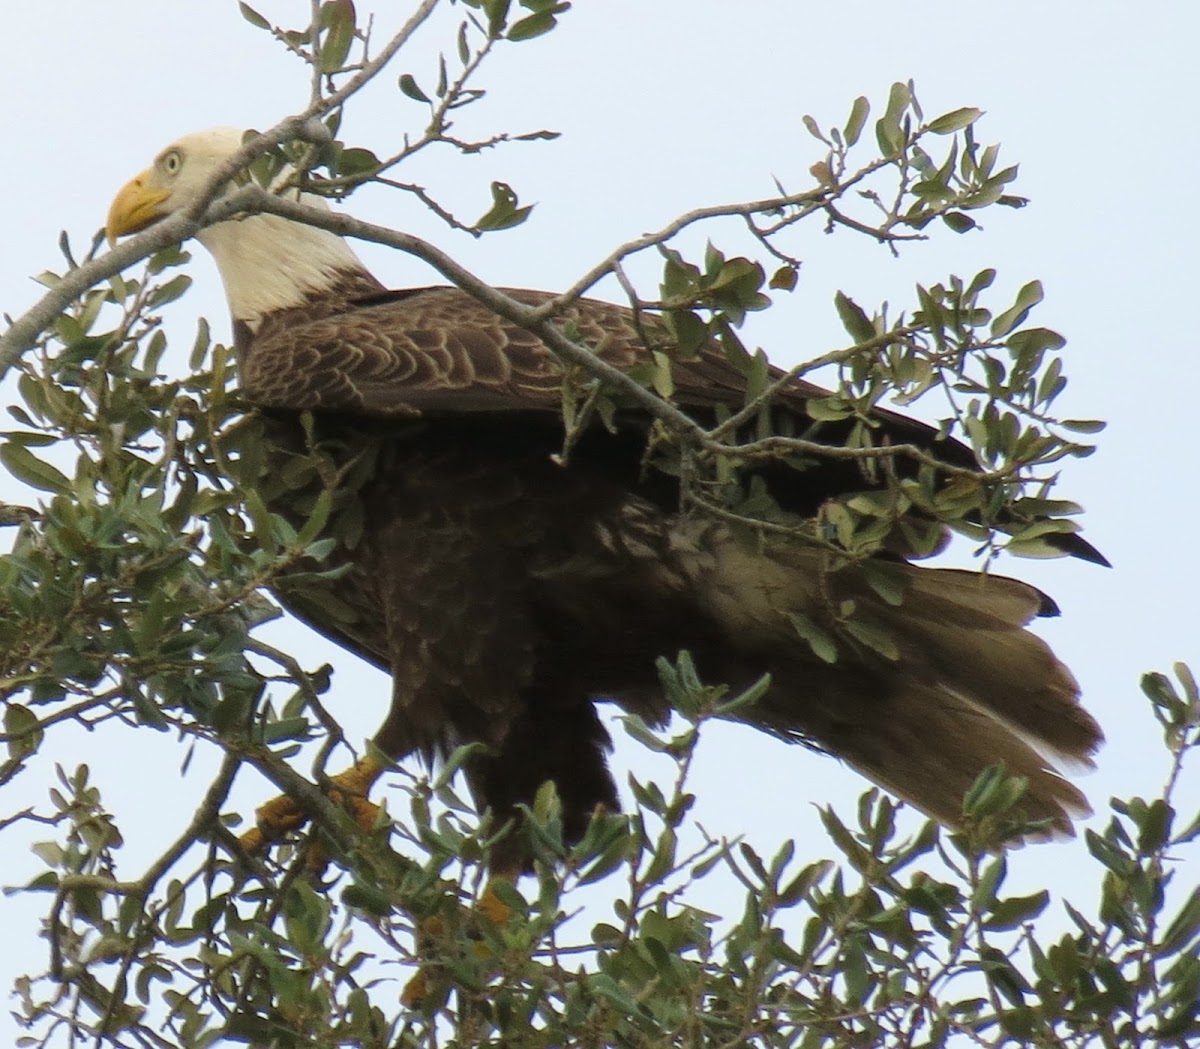 Southern bald eagle